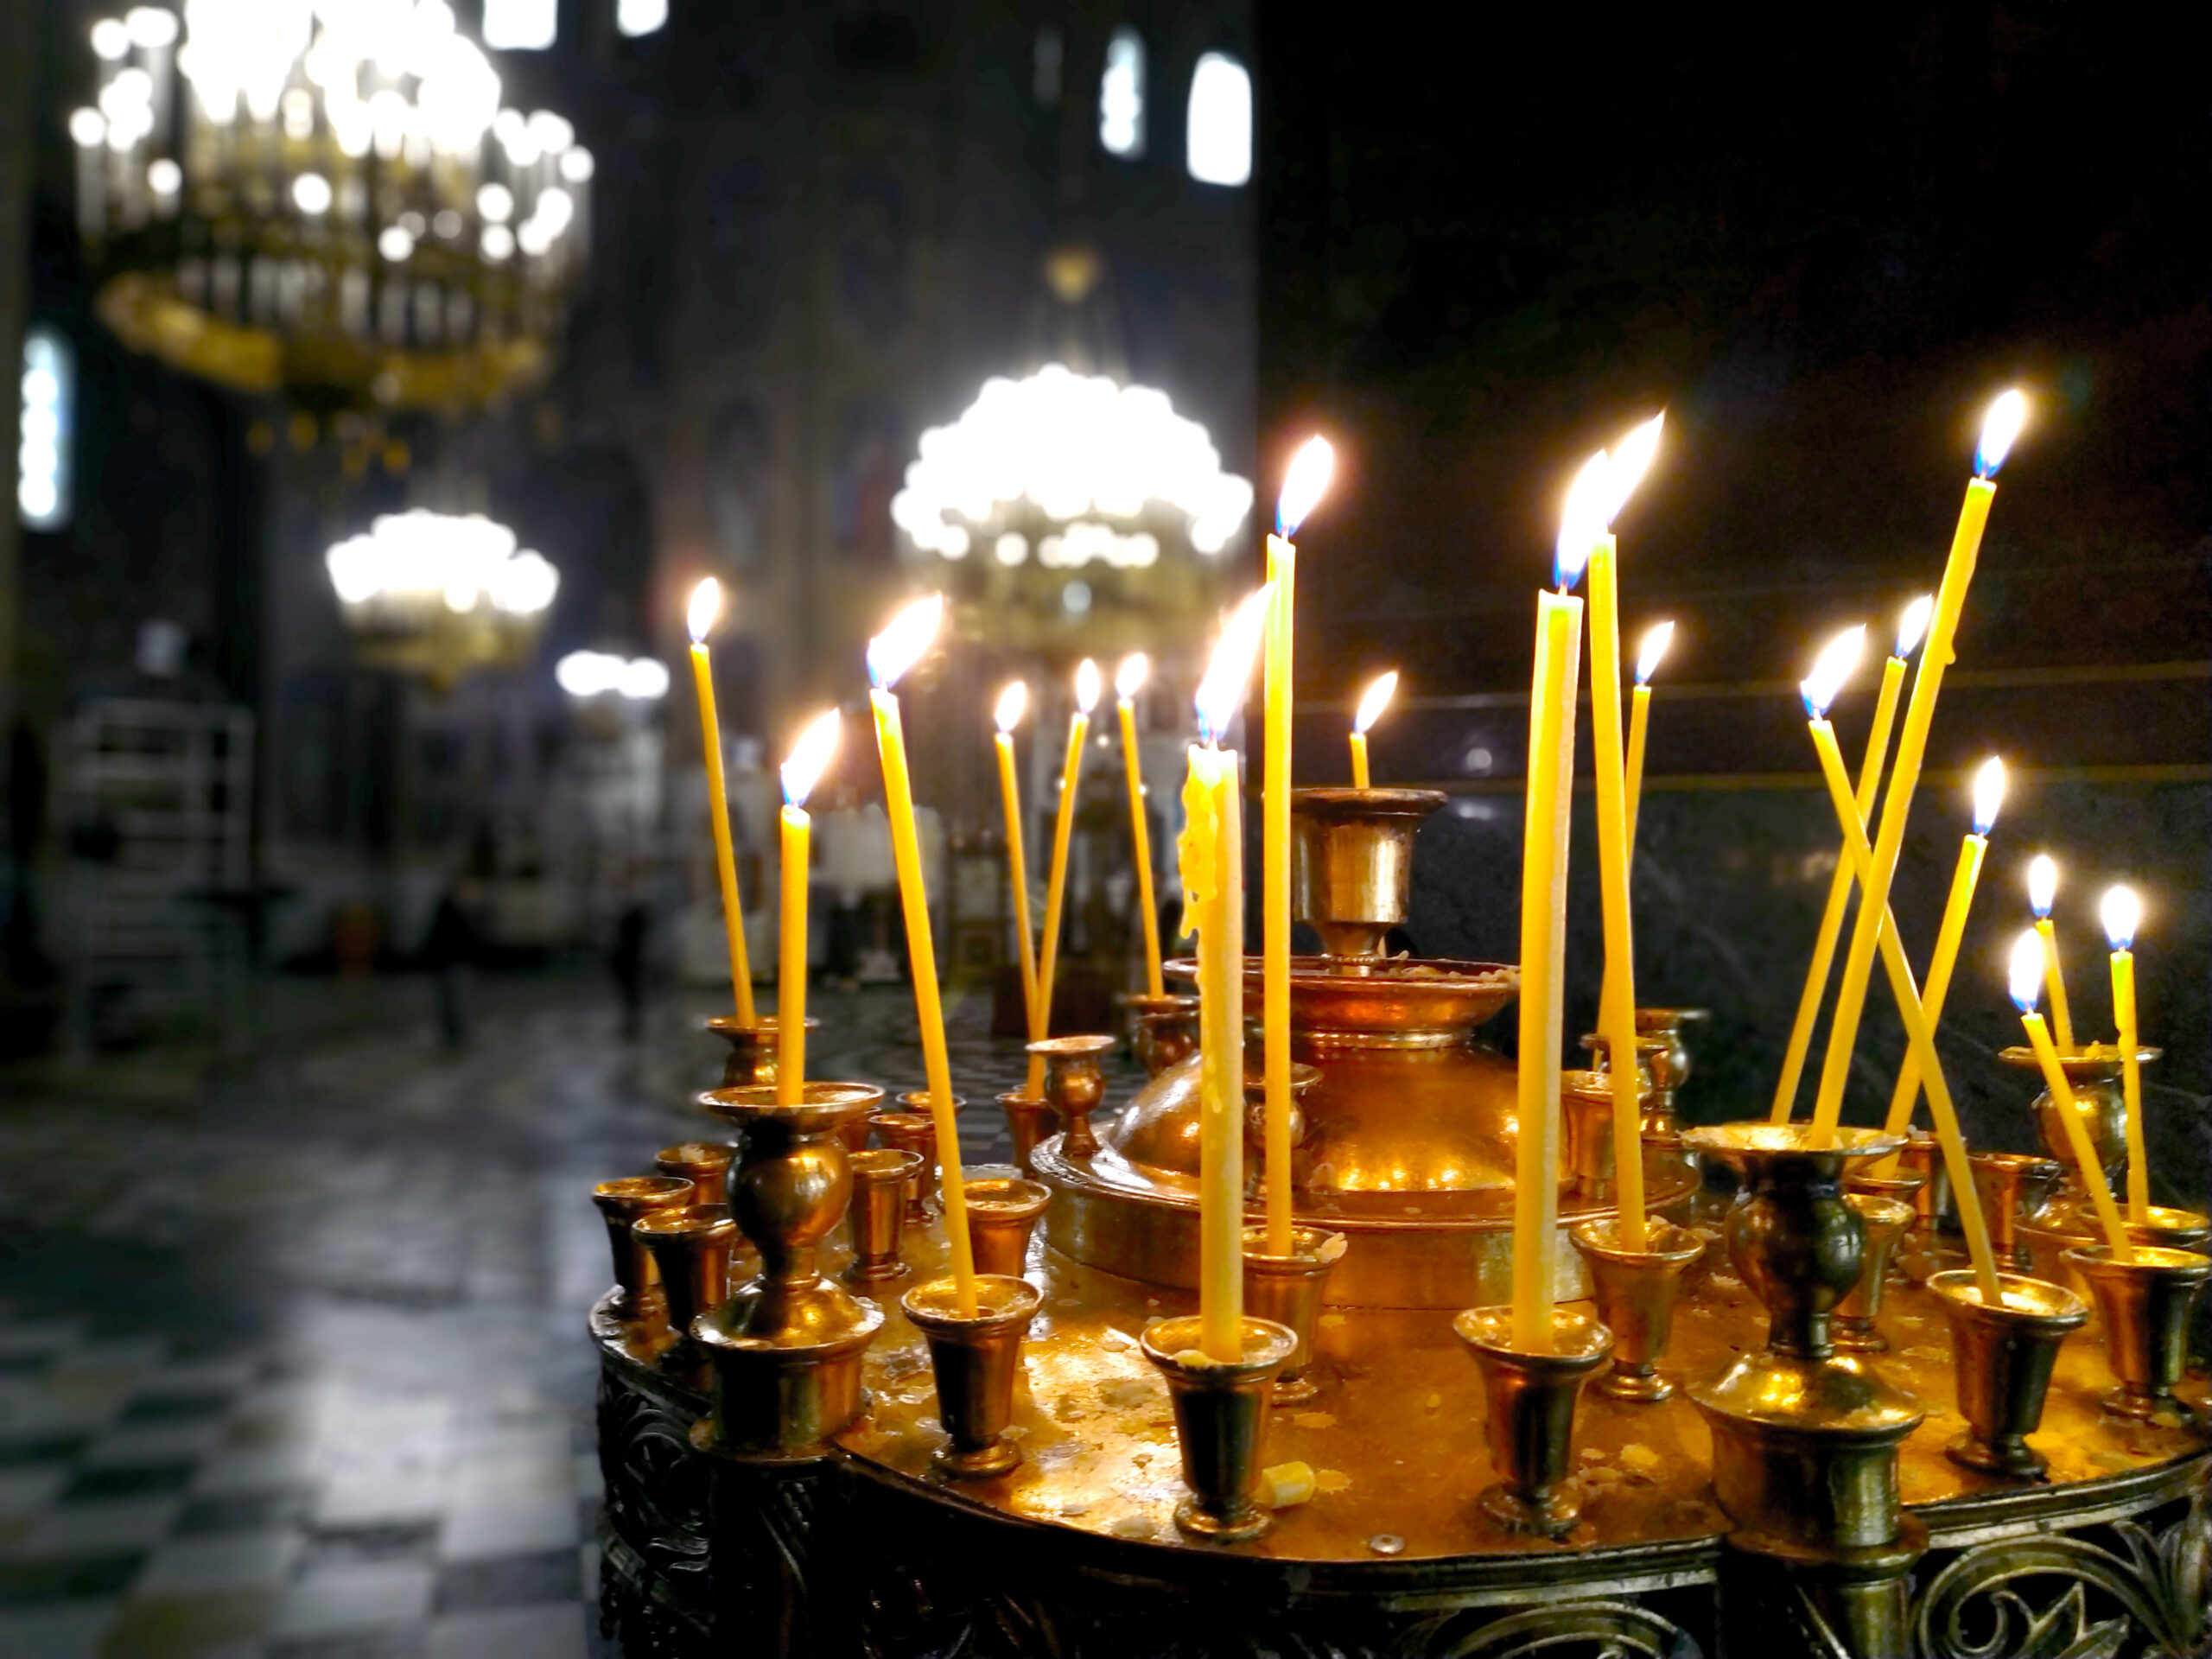 Православната църква почита на 30 ноември паметта на Св Апостол